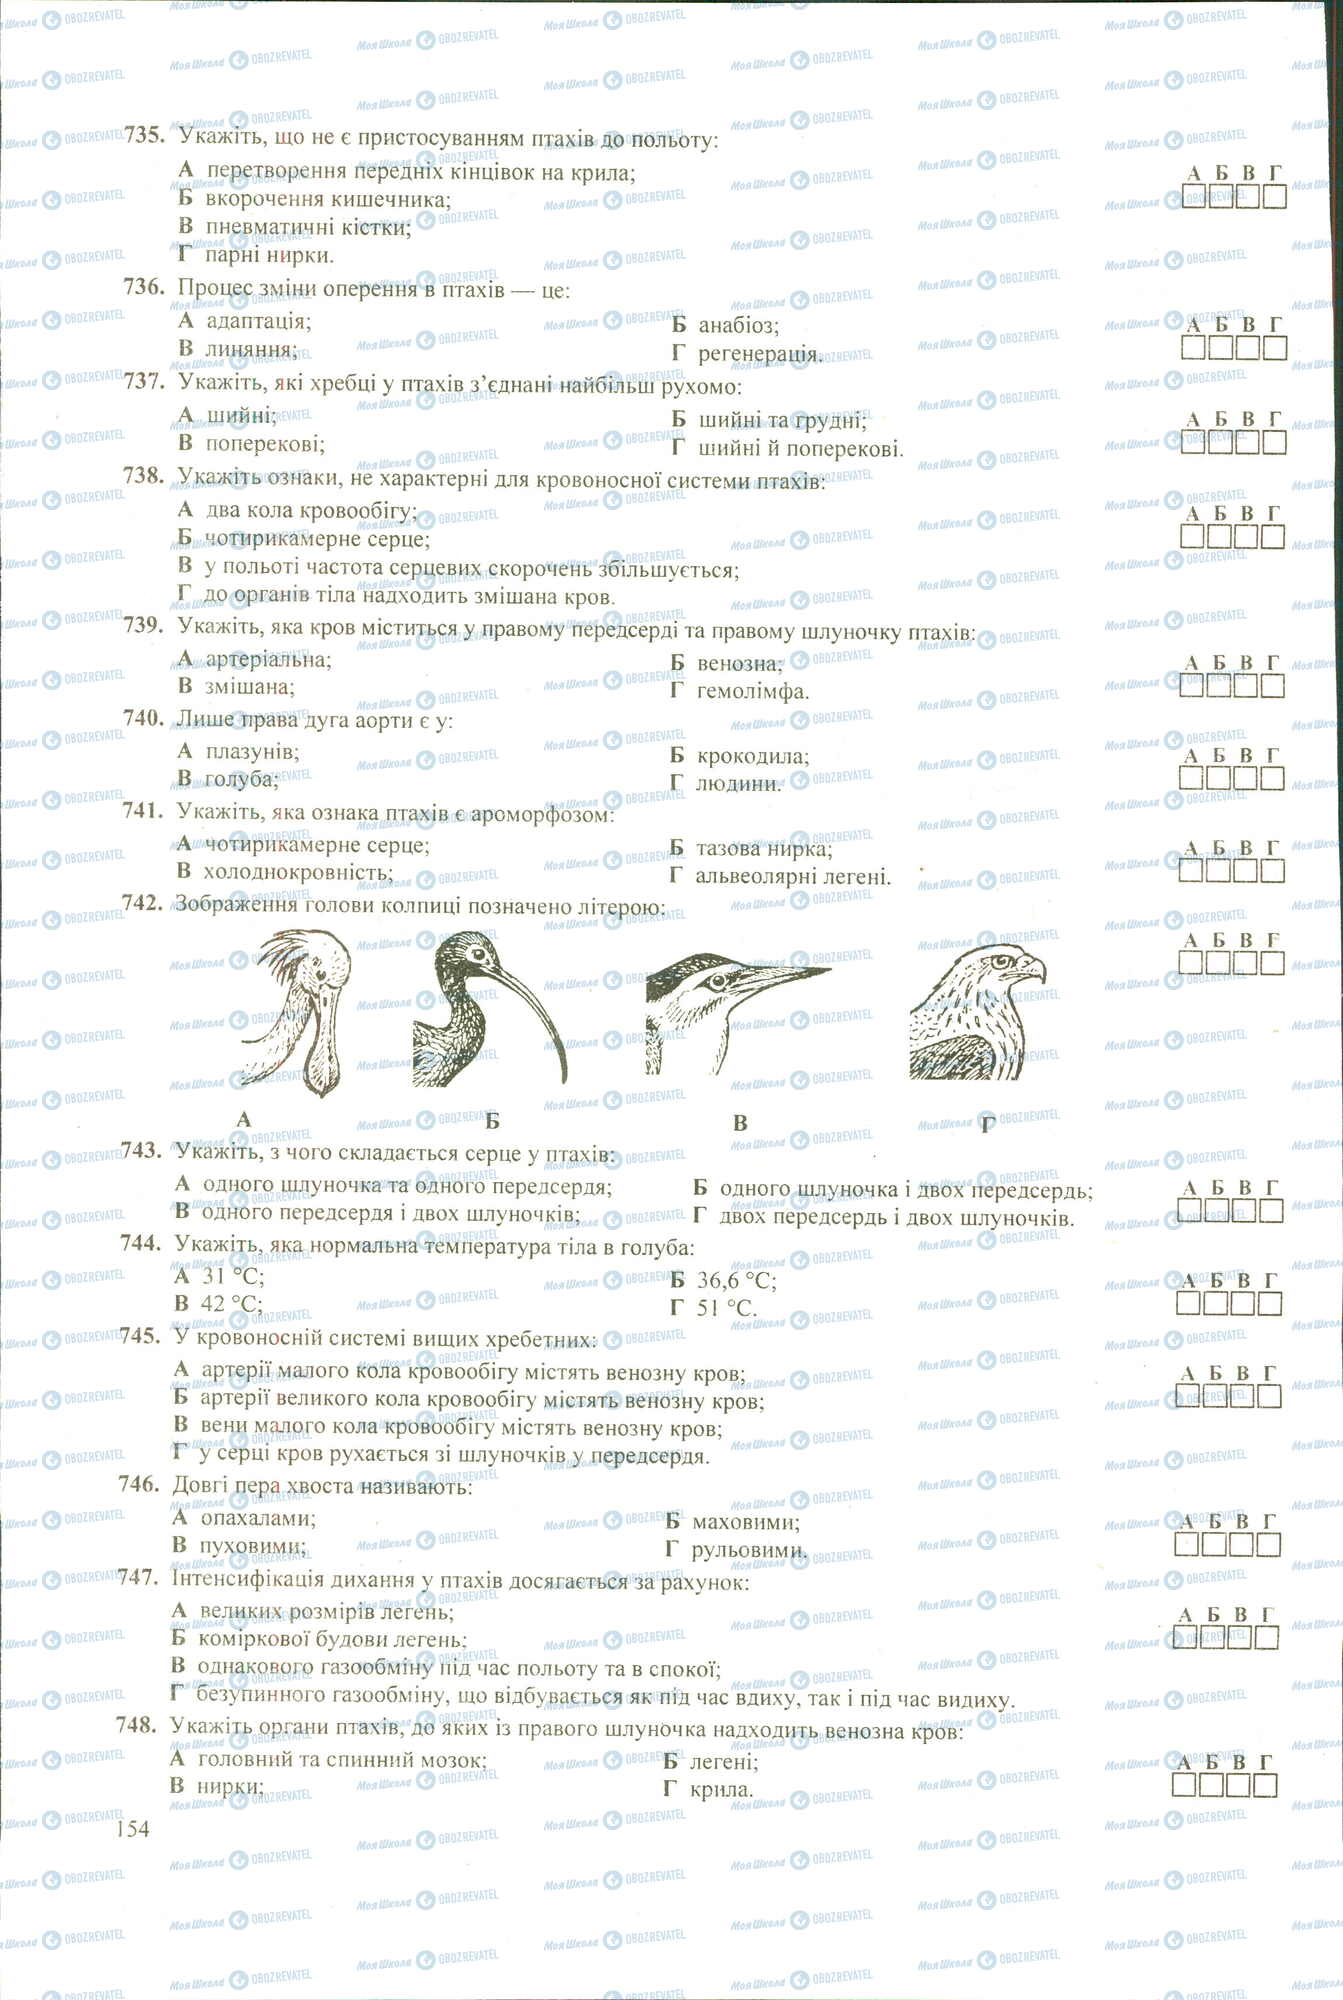 ЗНО Биология 11 класс страница 735-748